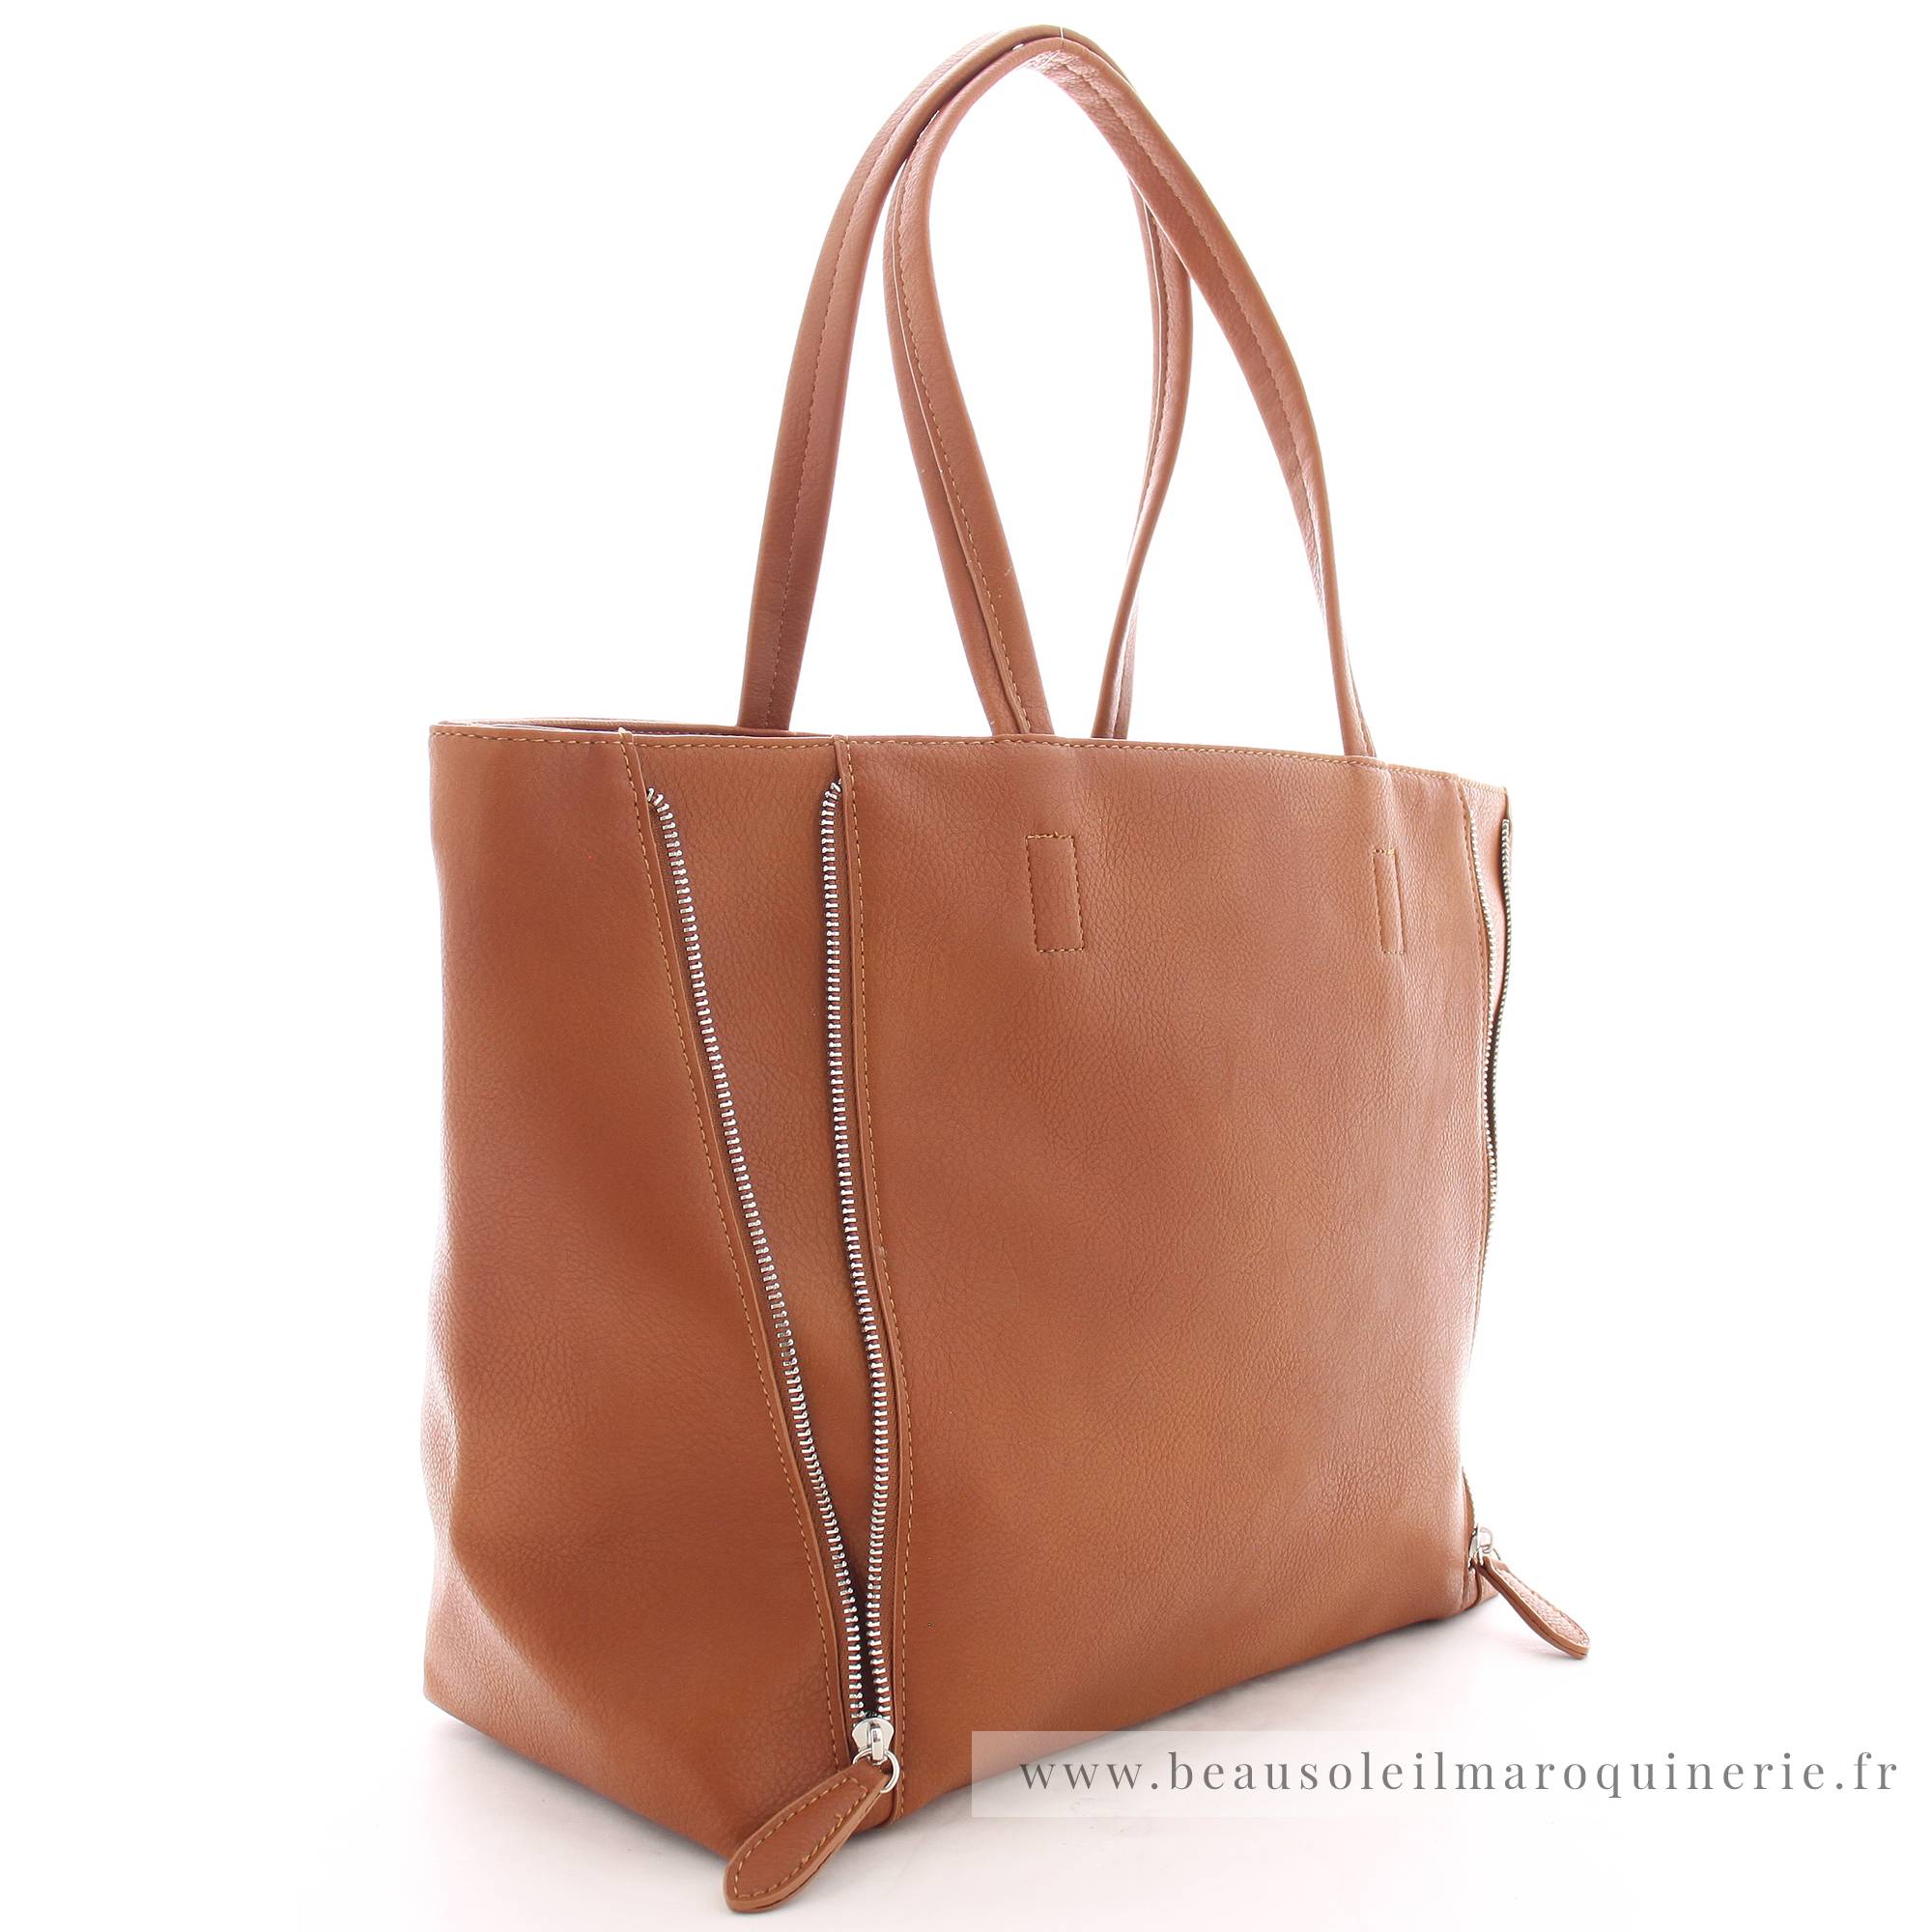 Grand sac shopping Fuchsia porté épaule Cara F1598-1COG couleur cognac vue de profil